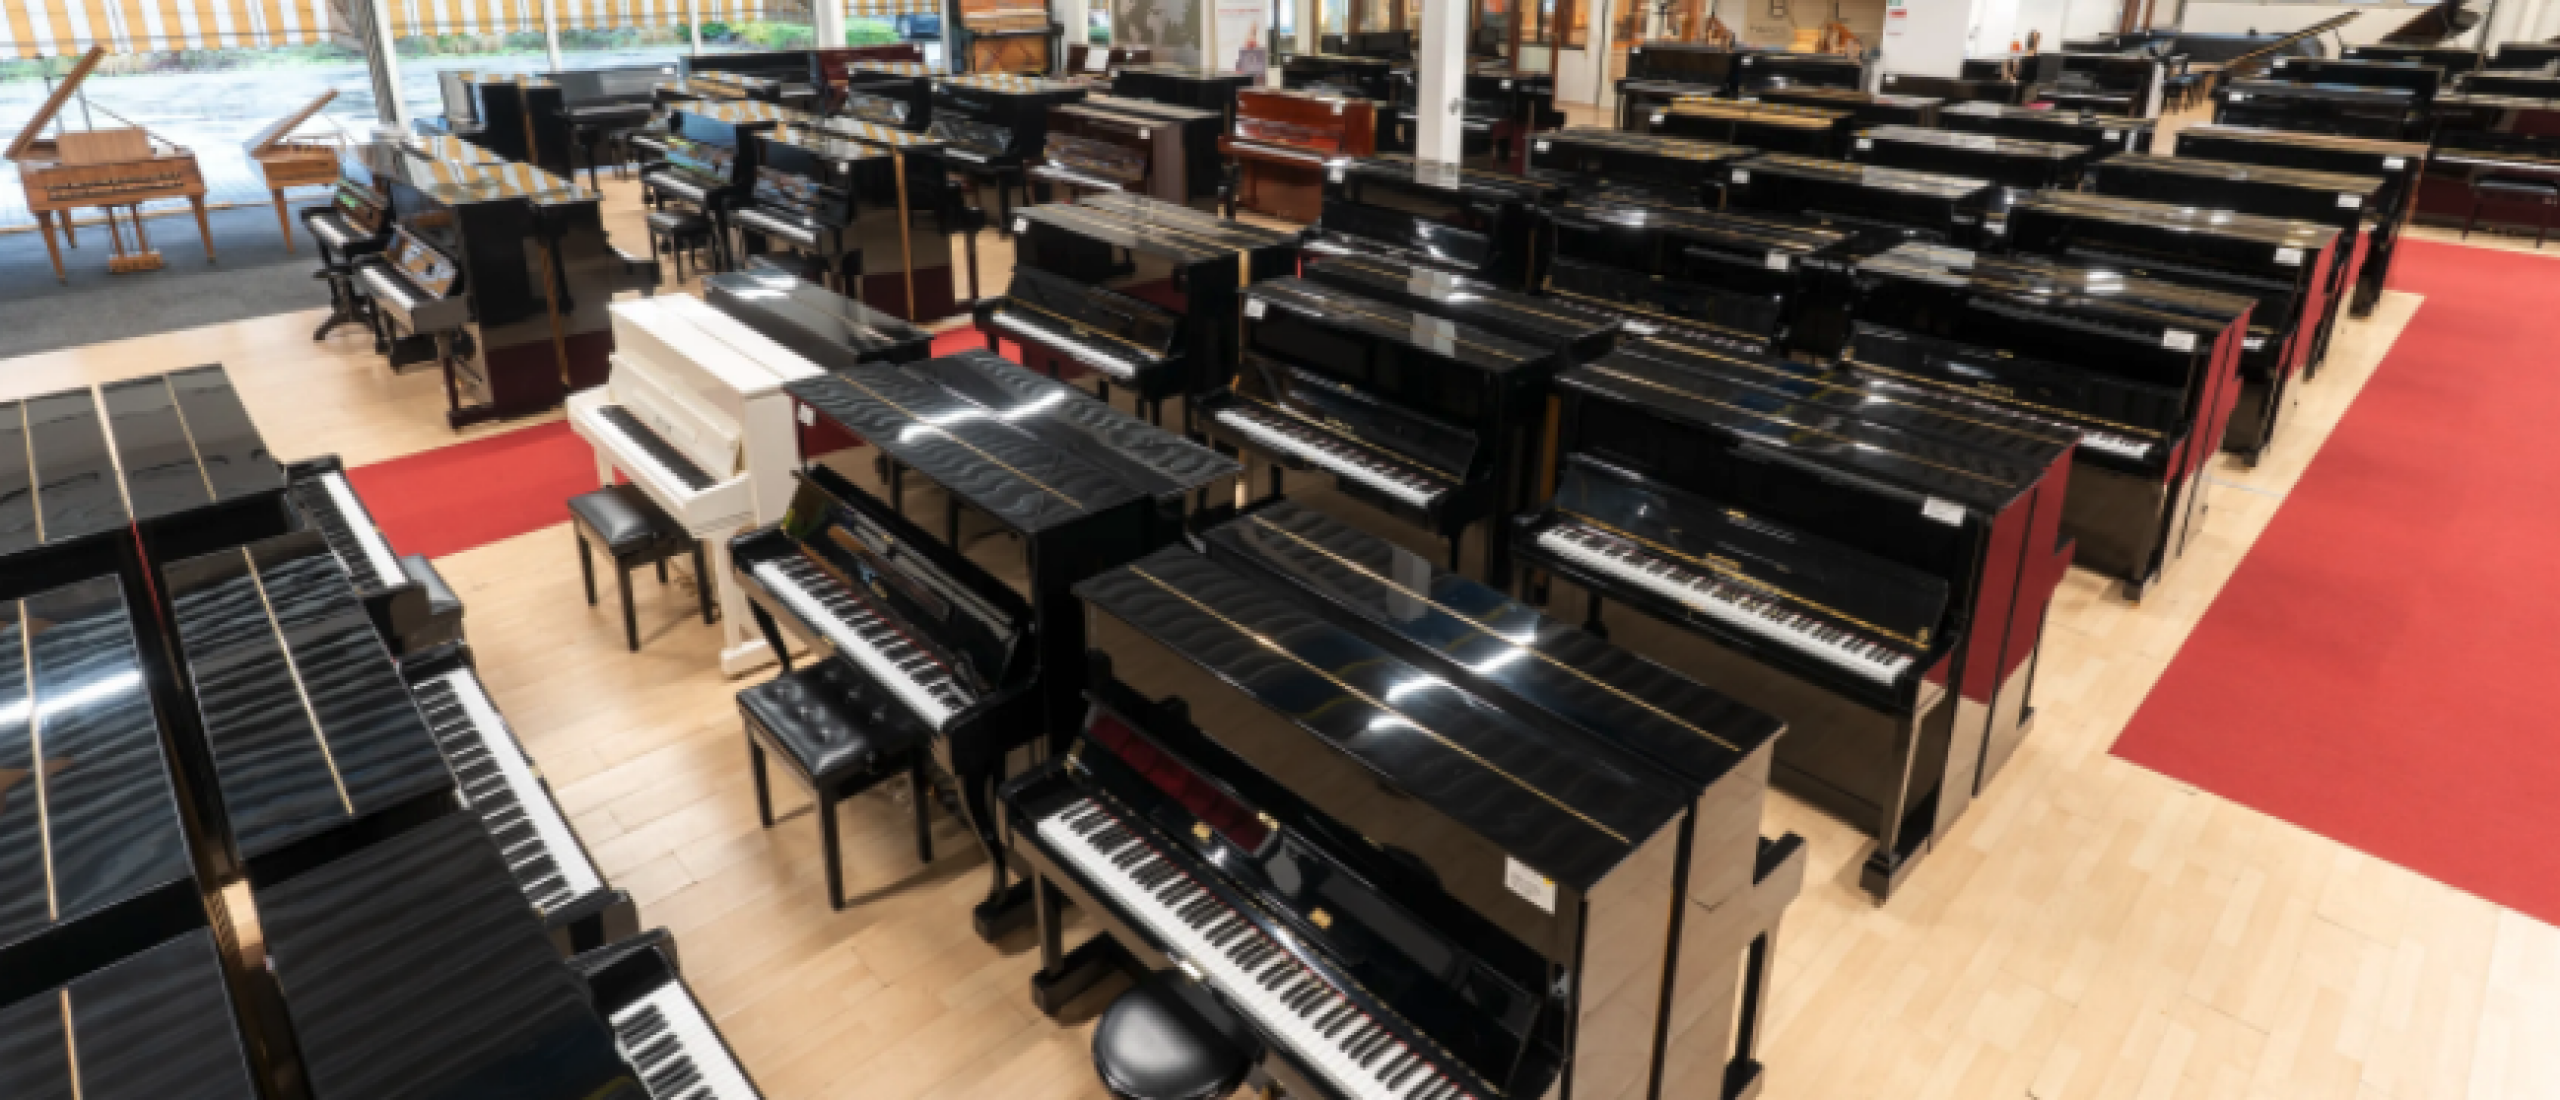 Waar moet je op letten bij het kopen van een piano?